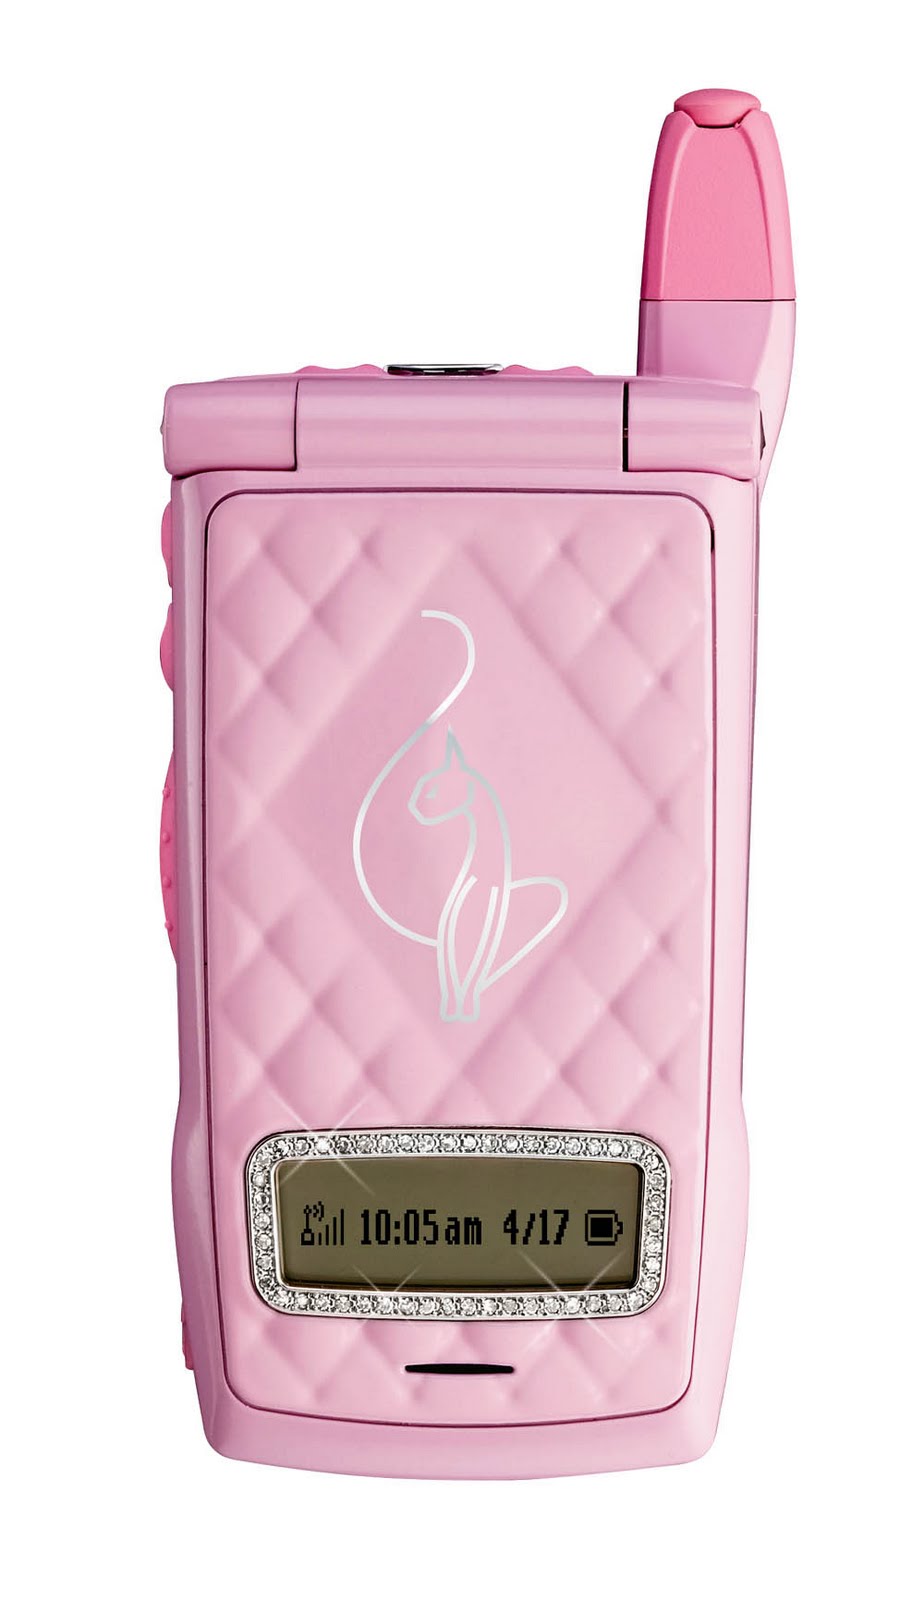 Розовый телефон раскладушка. Самсунг розовая раскладушка модель. Самсунг раскладушка розовый. Motorola раскладушка розовая. Motorola i833.